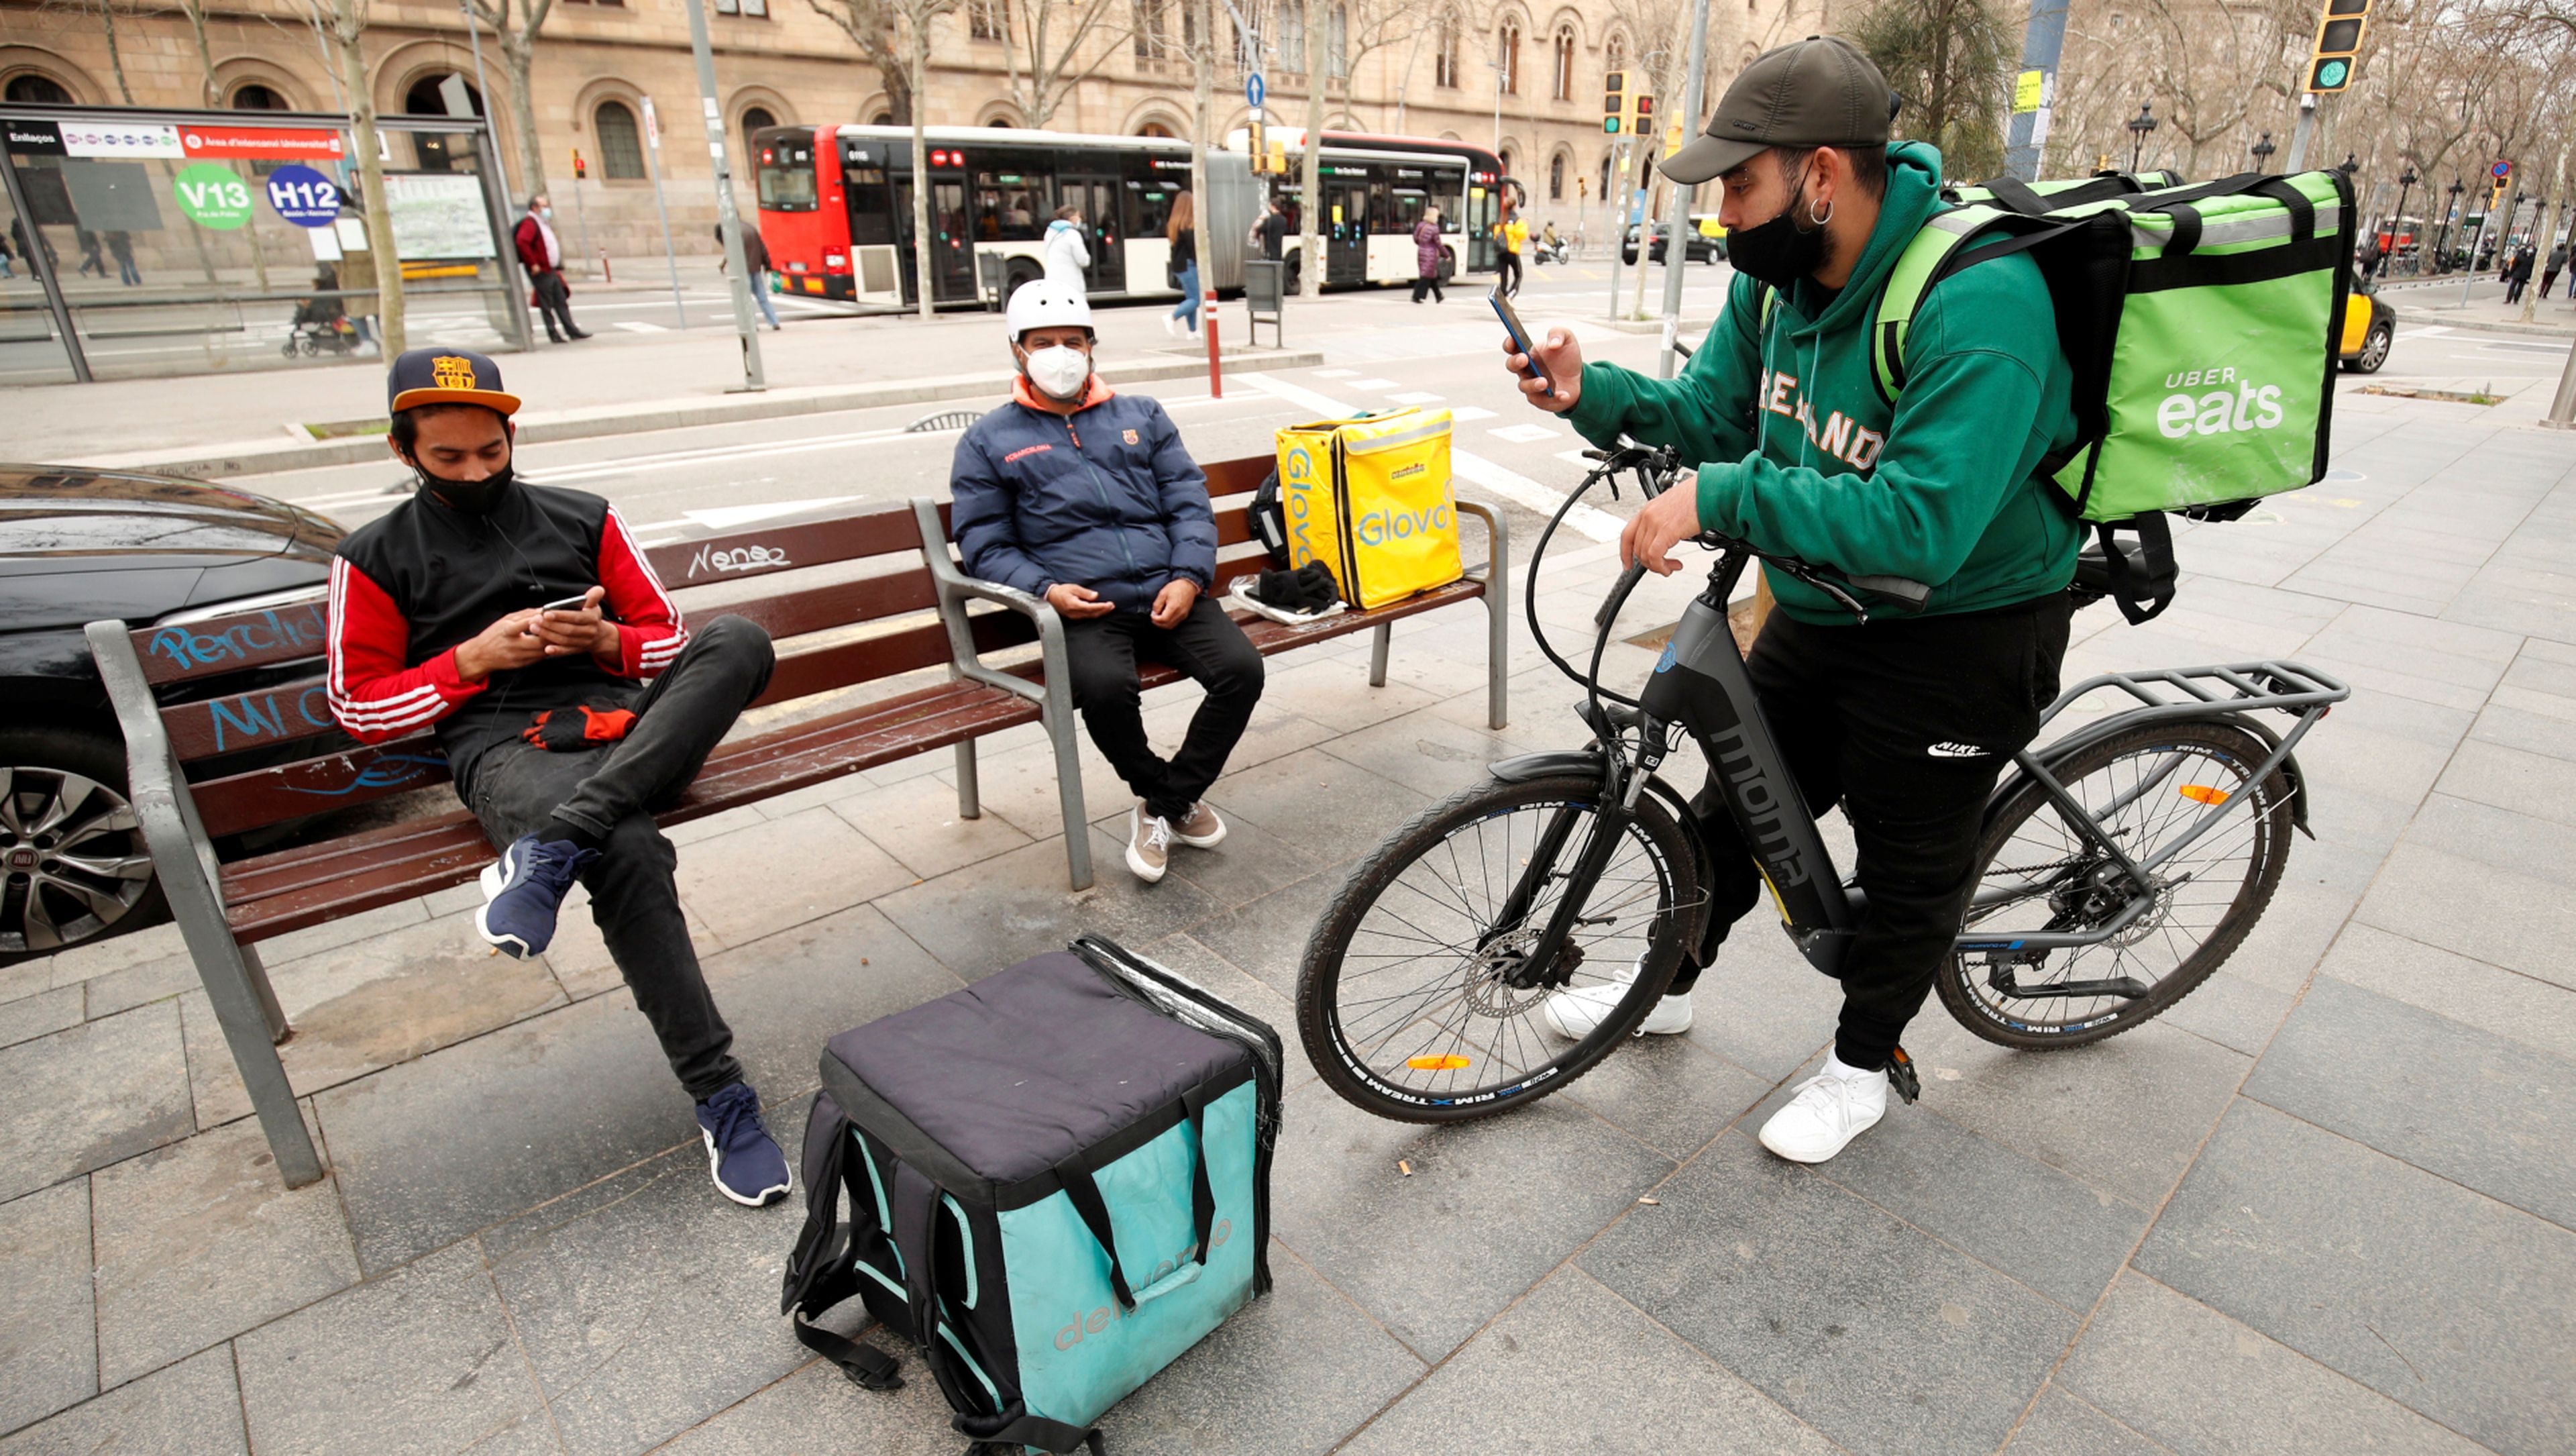 Riders de Glovo, Deliveroo y Uber Eats esperan pedidos en un banco en Barcelona